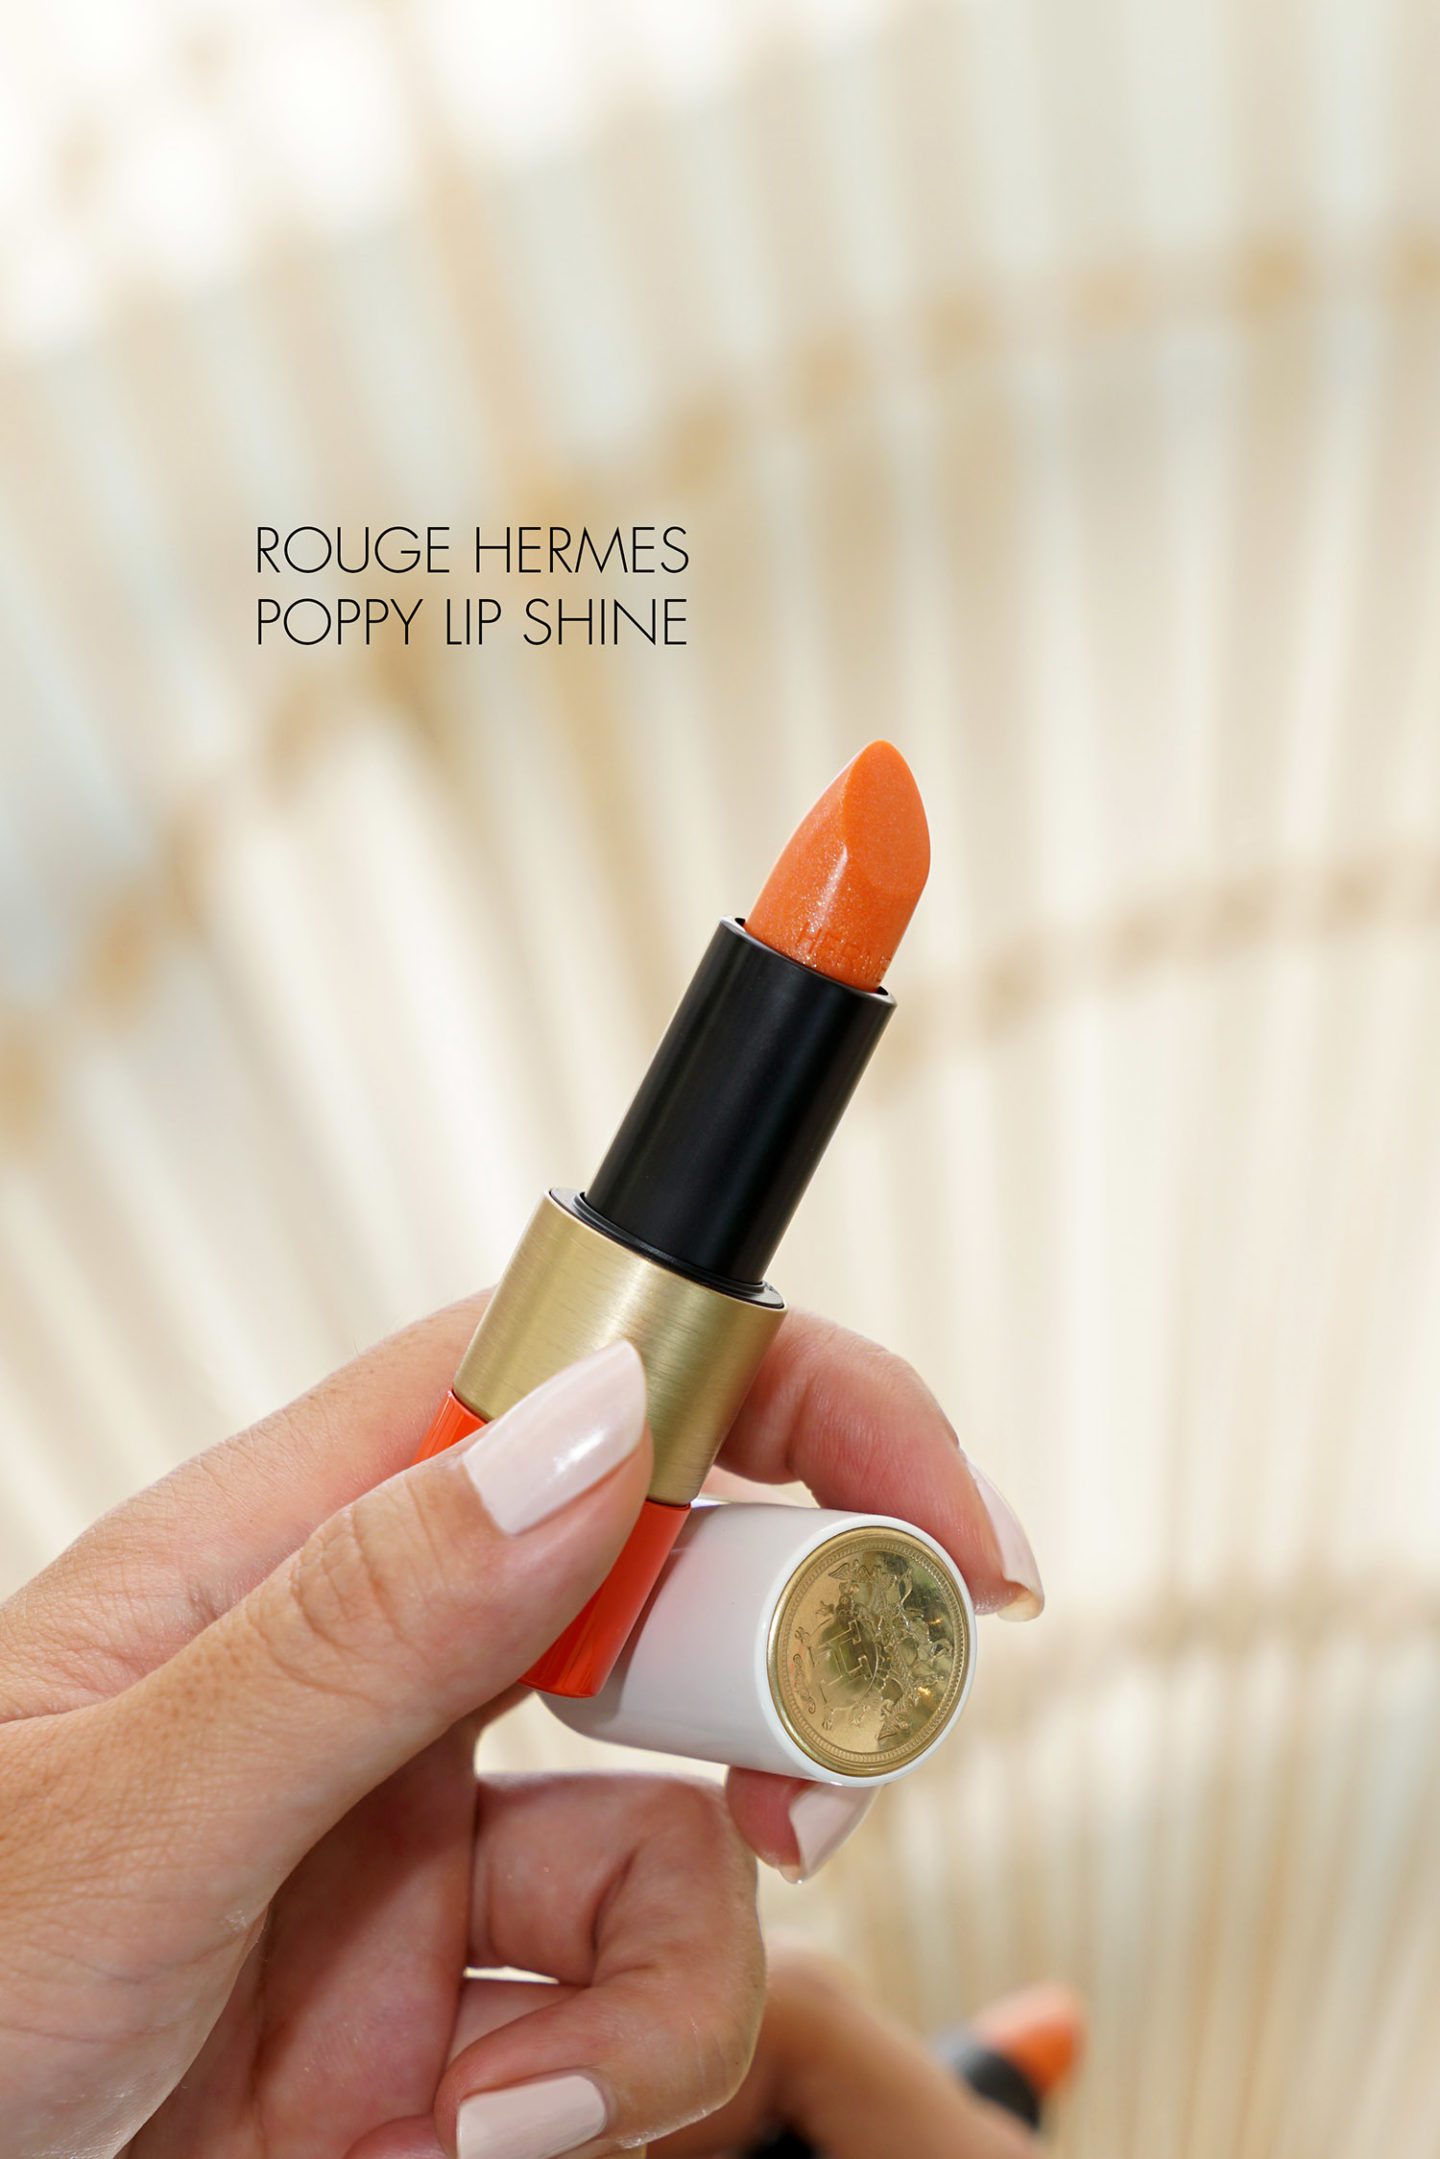 Hermes Poppy Lip Shine